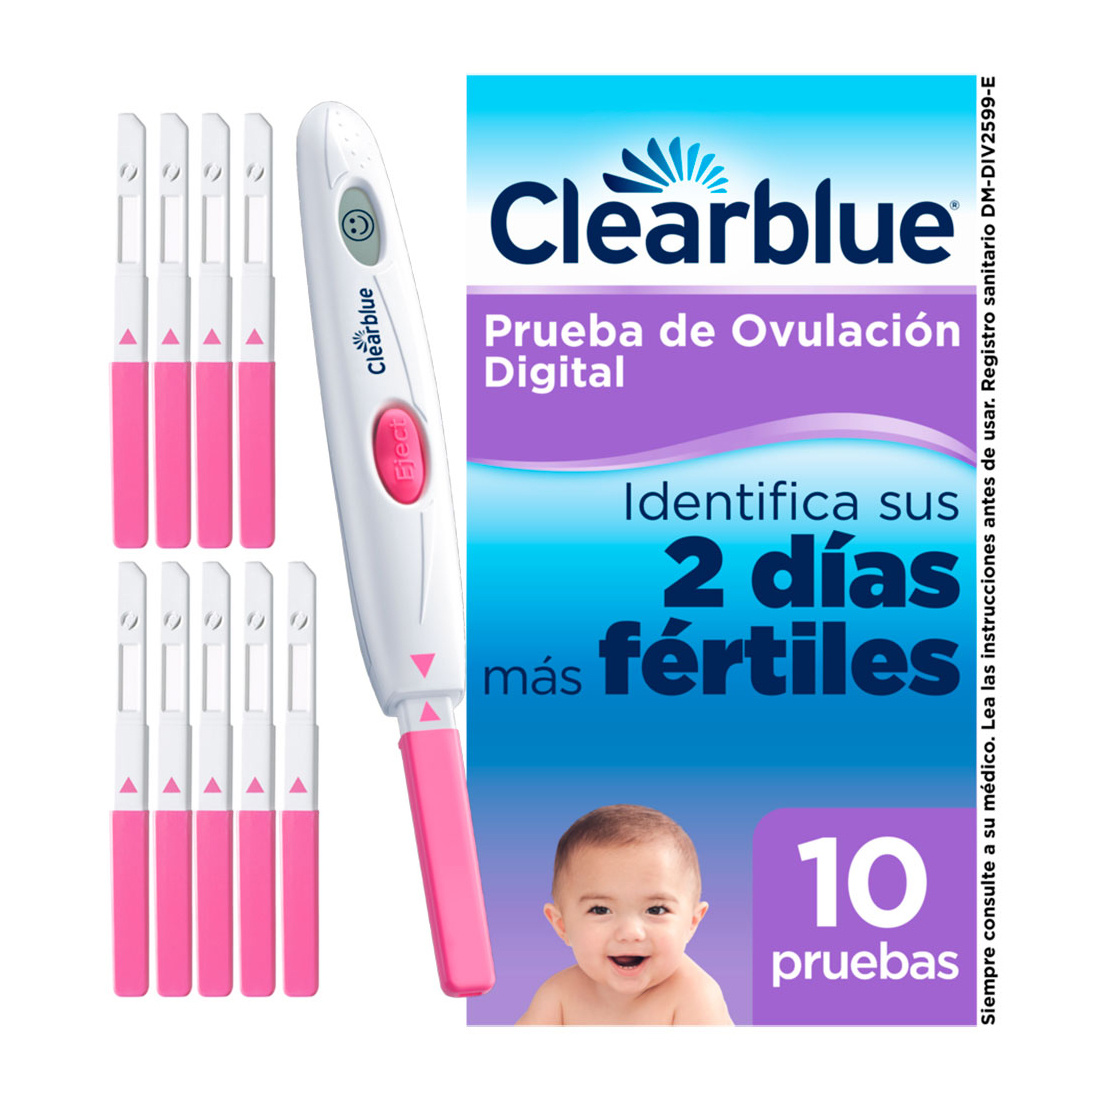 Pruebas de ovulación: digitales y kits - Clearblue